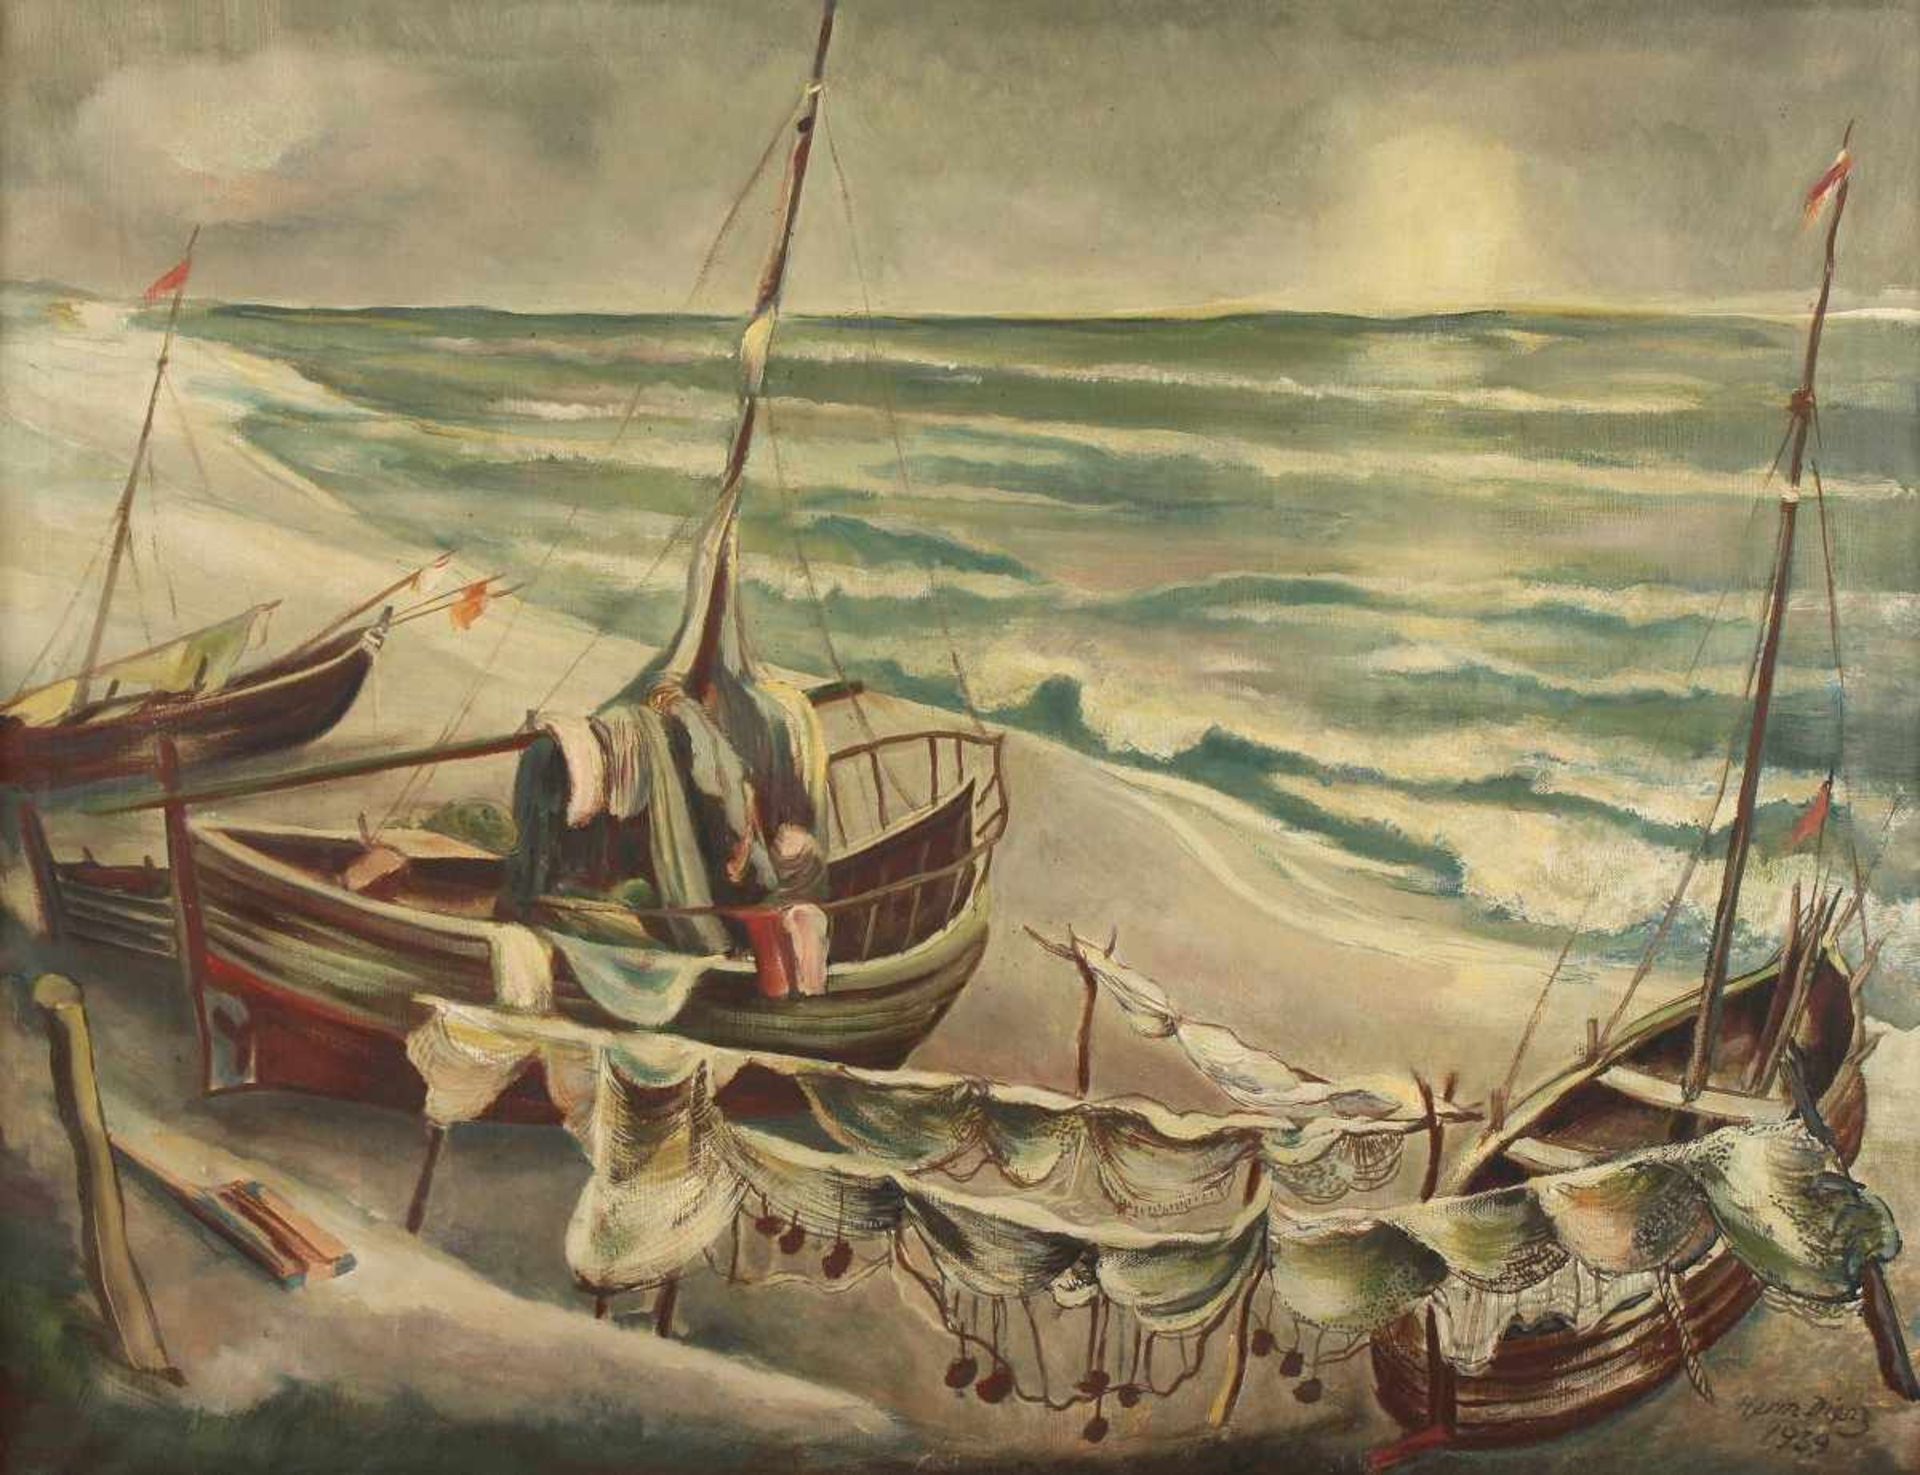 DIENZ, Herm, "Boote an der Ostsee", Öl/Lwd., 64 x 84, unten rechts signiert und datiert 1939,